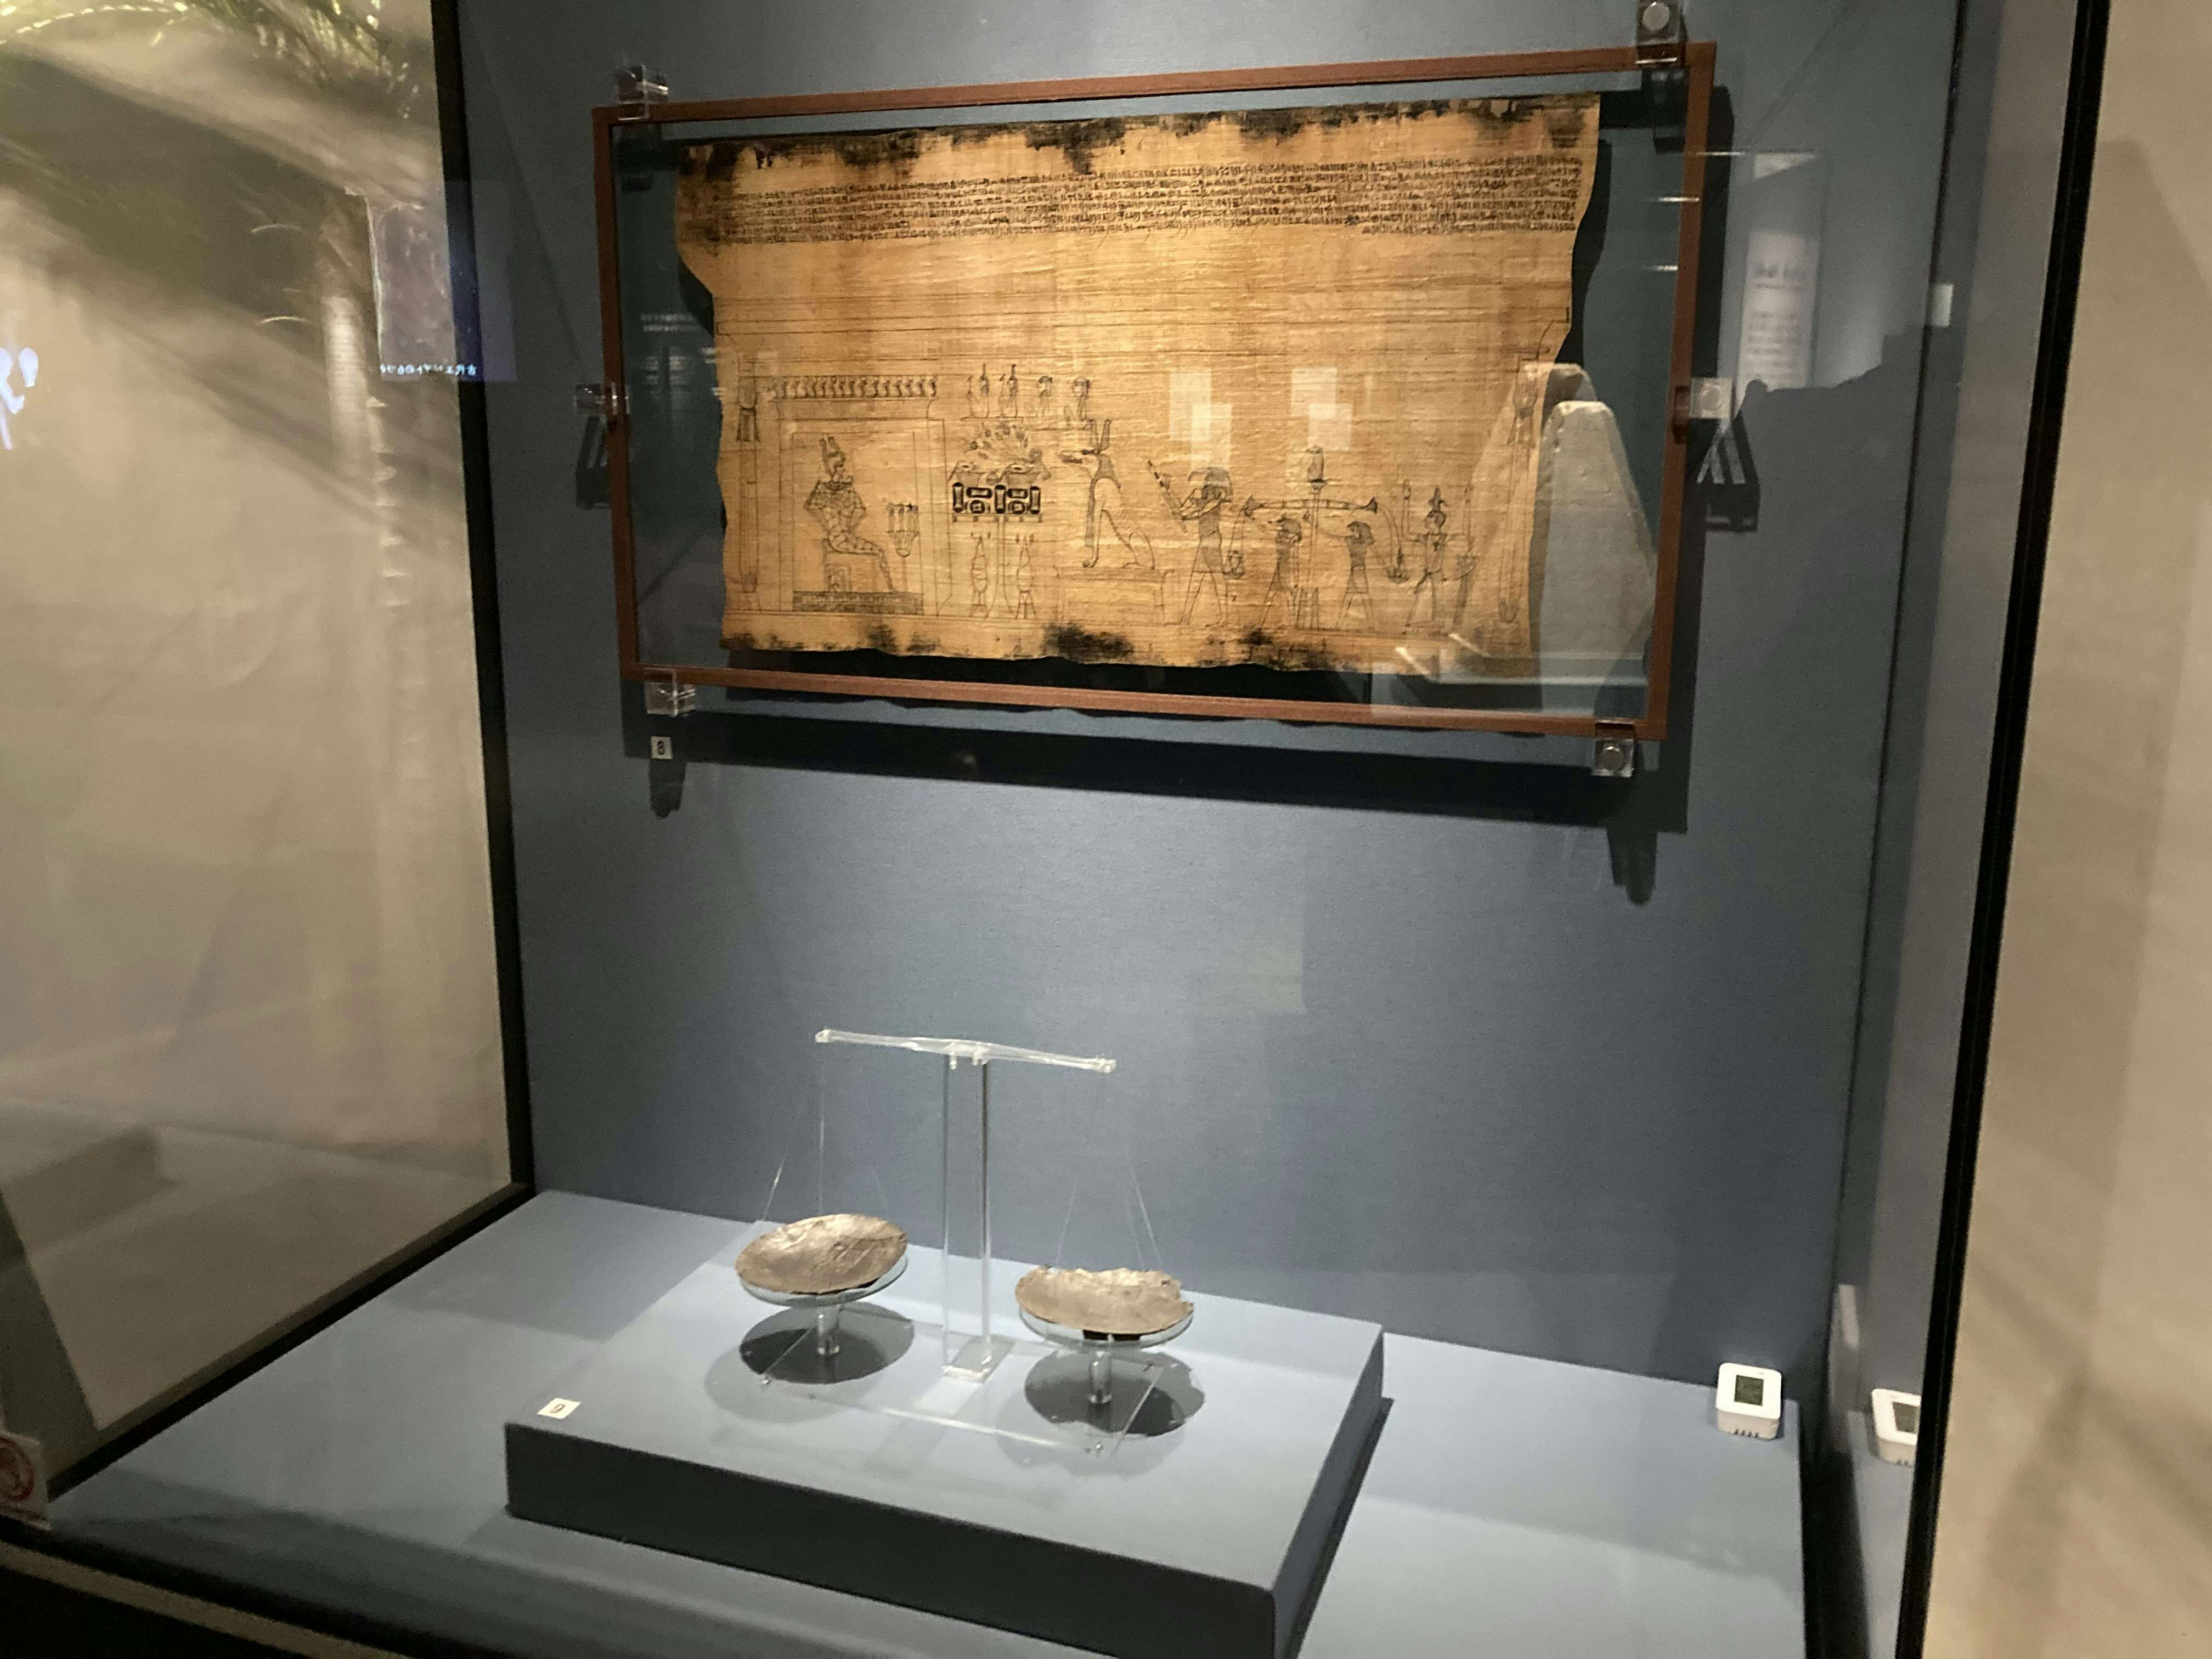 6体のミイラをctスキャンで解析 古代エジプト人の生き様を知る 大英博物館ミイラ展 古代エジプト6つの物語 が開幕 画像ギャラリー 11 35 美術手帖